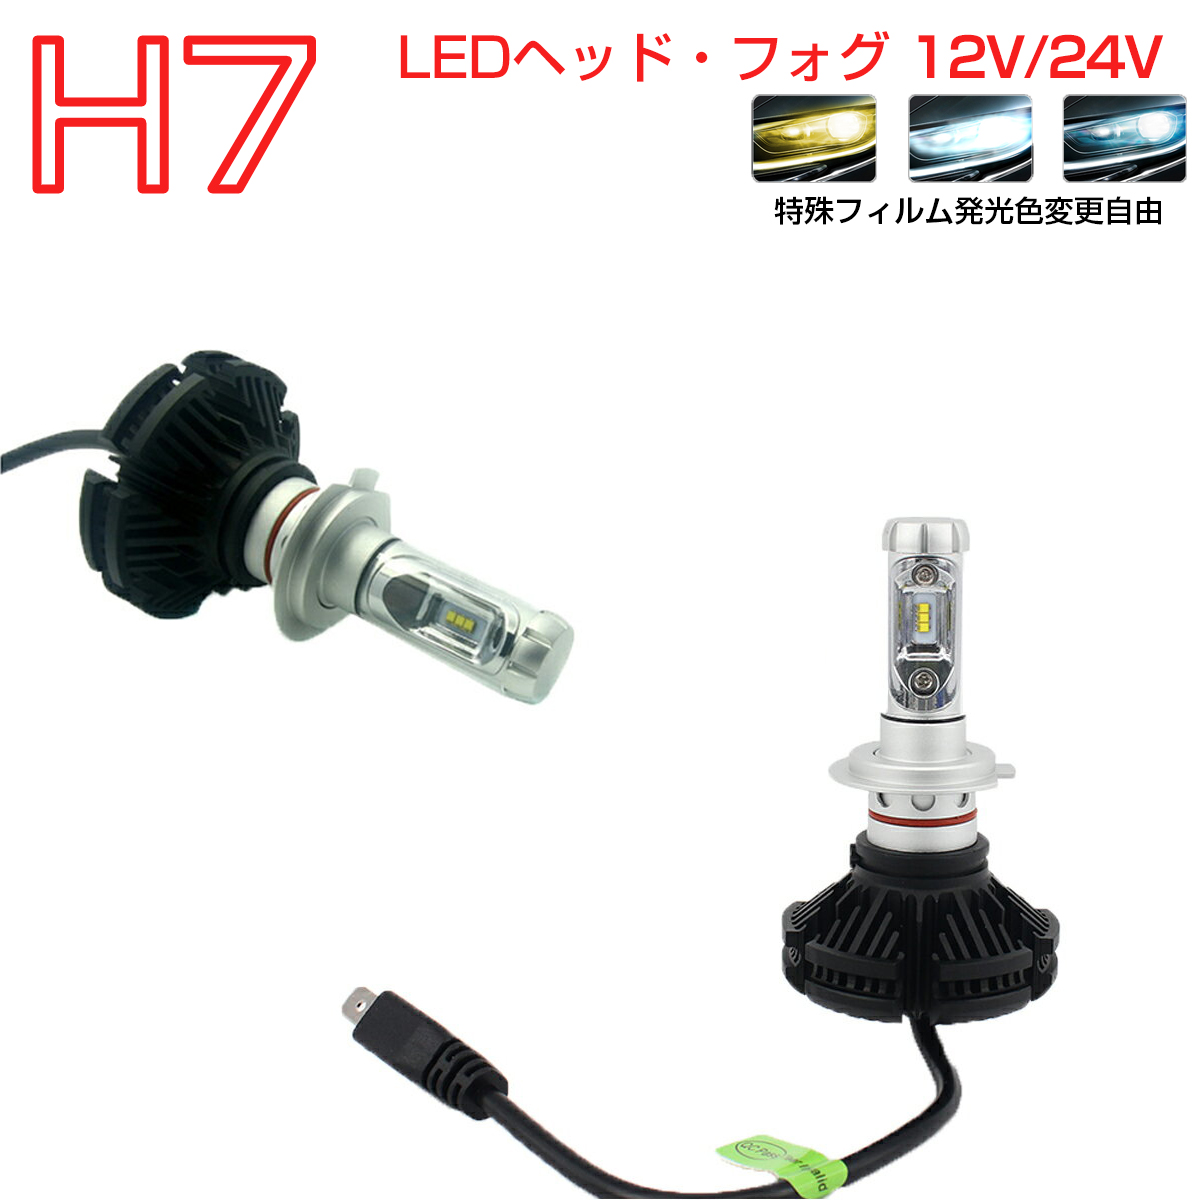 LED H7 2個入り LEDヘッドライト 6000LM 色交換シート 12V 24V 6500K 宅配便送料無料 6ヶ月保証